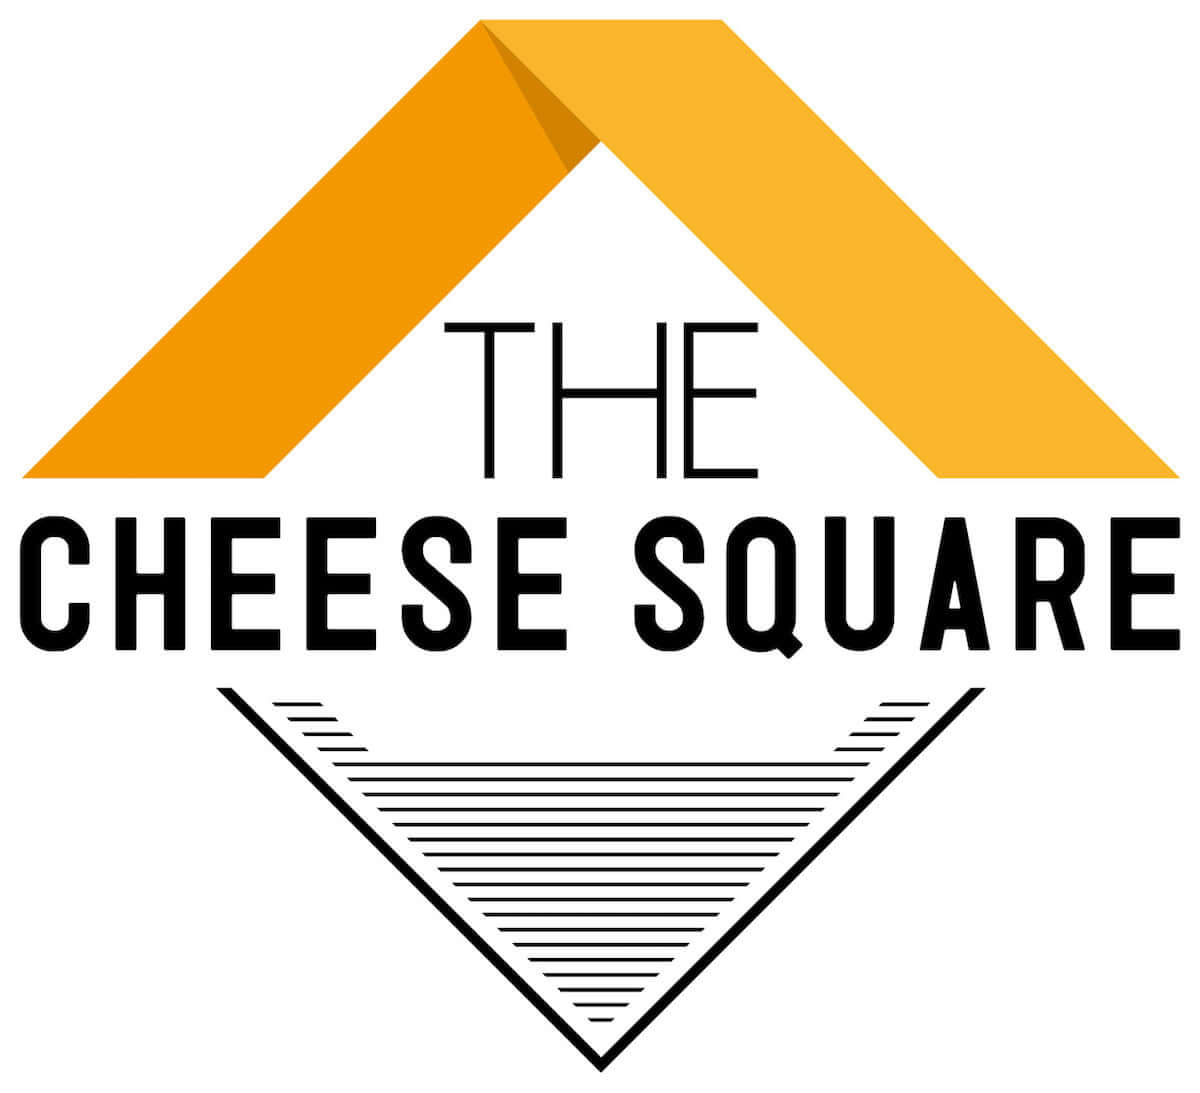 ローストビーフ、生ハム、チーズフォンデュの食べ放題イベント「秋の肉祭り」がCHEESE SQUAREで開催 gourmet180903-cheesesquare-5-1200x1093